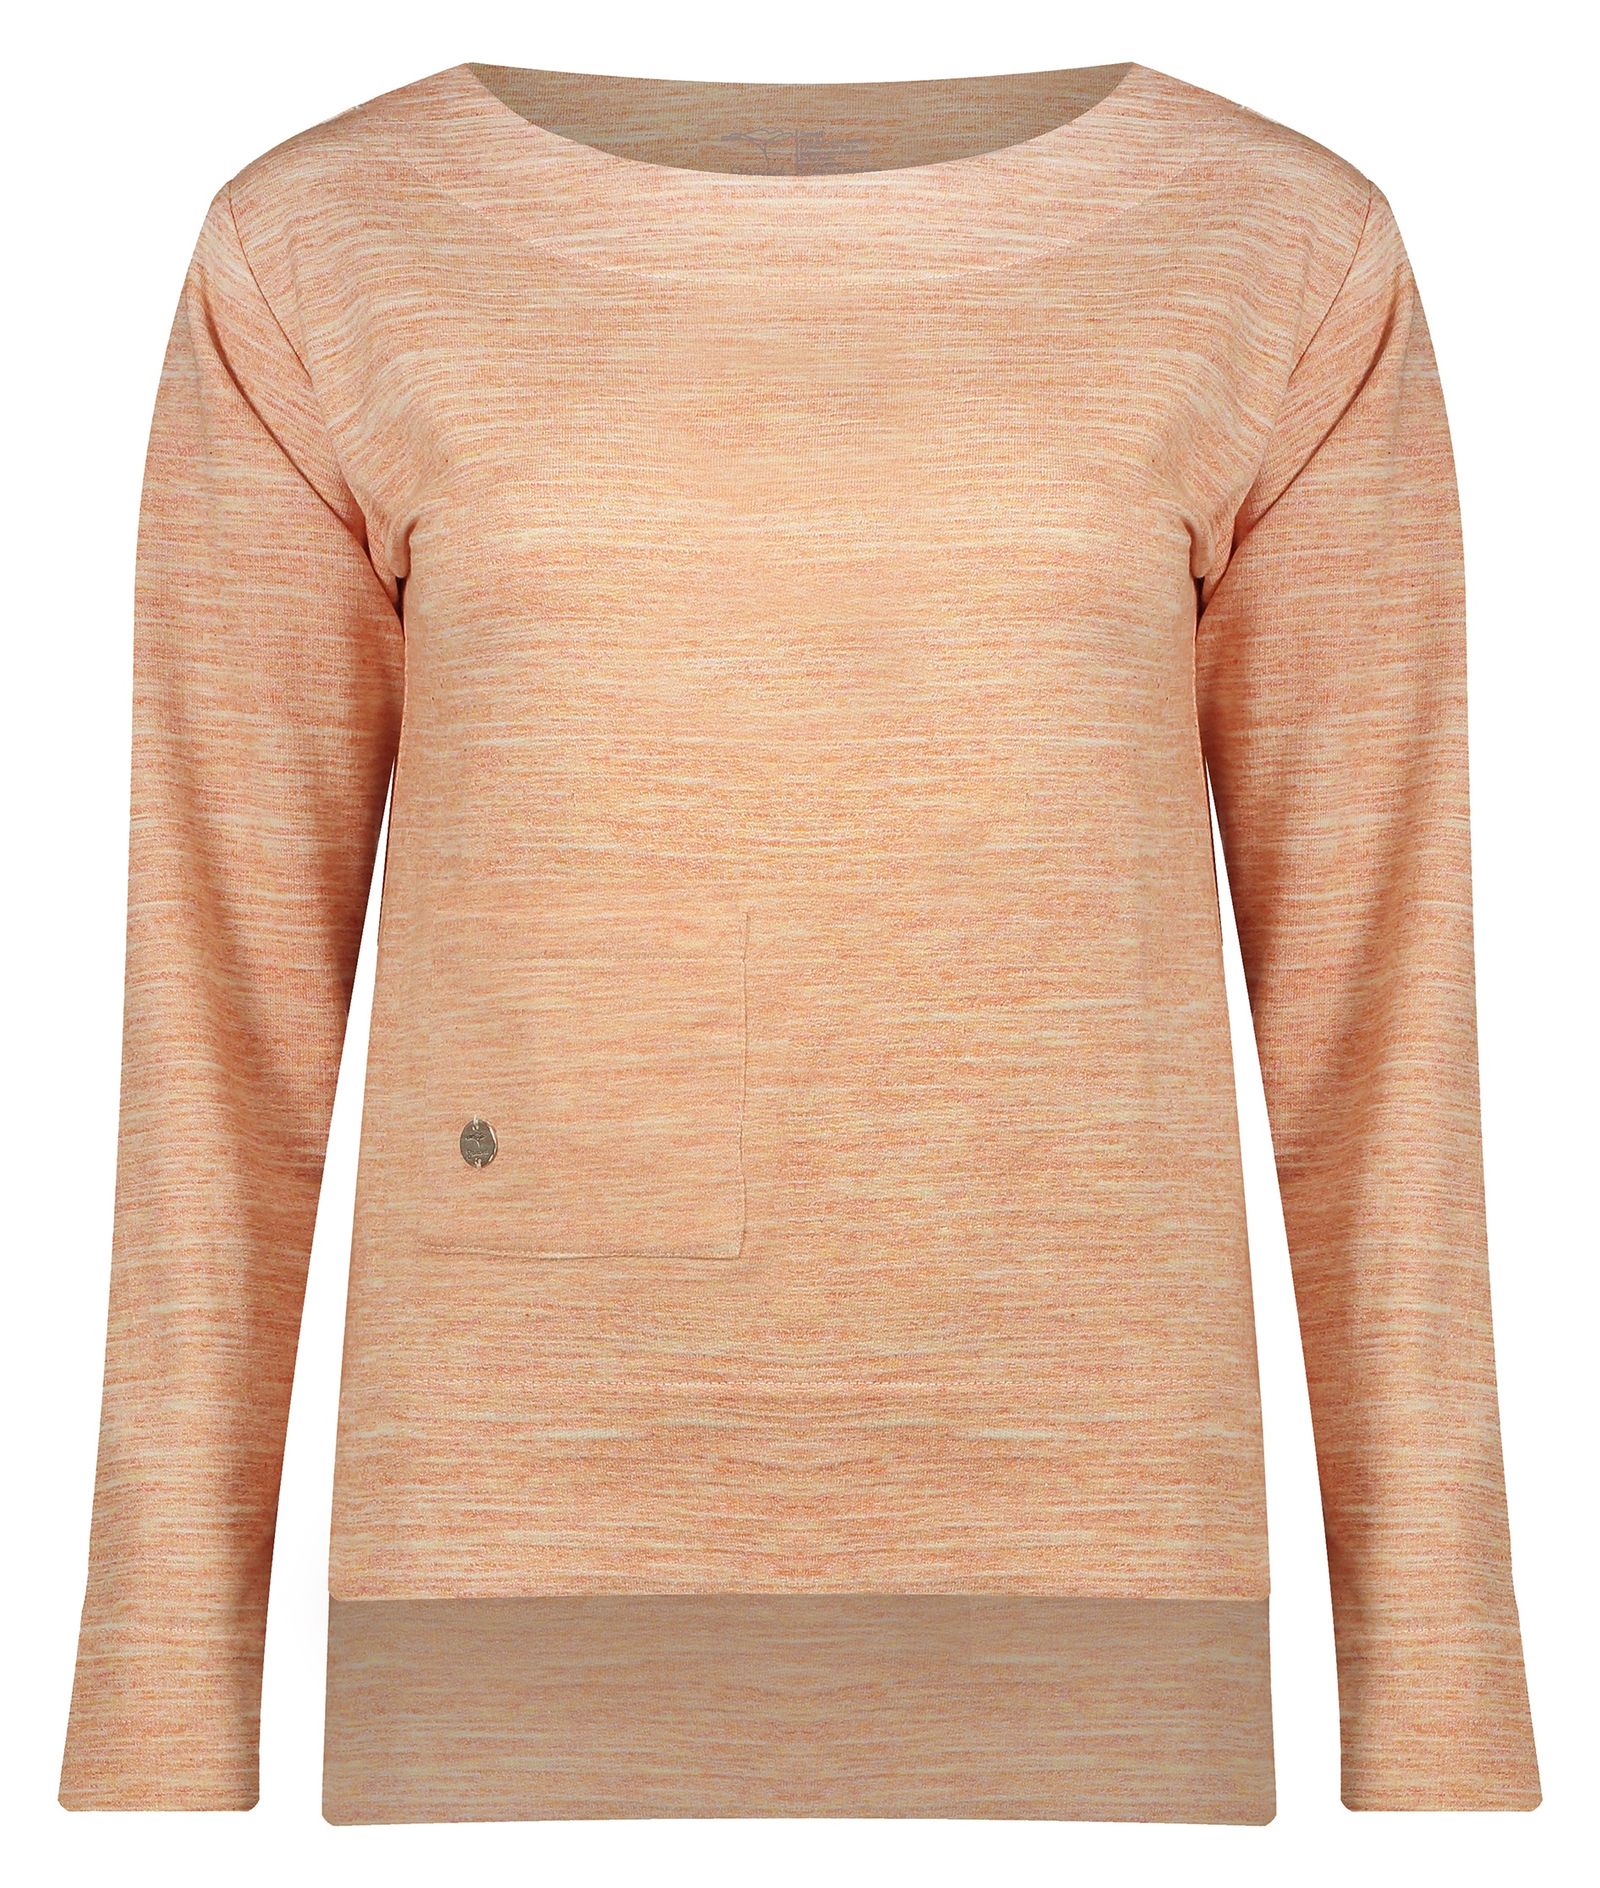 تی شرت زنانه گارودی مدل 1003107023-16 - نارنجی - 1